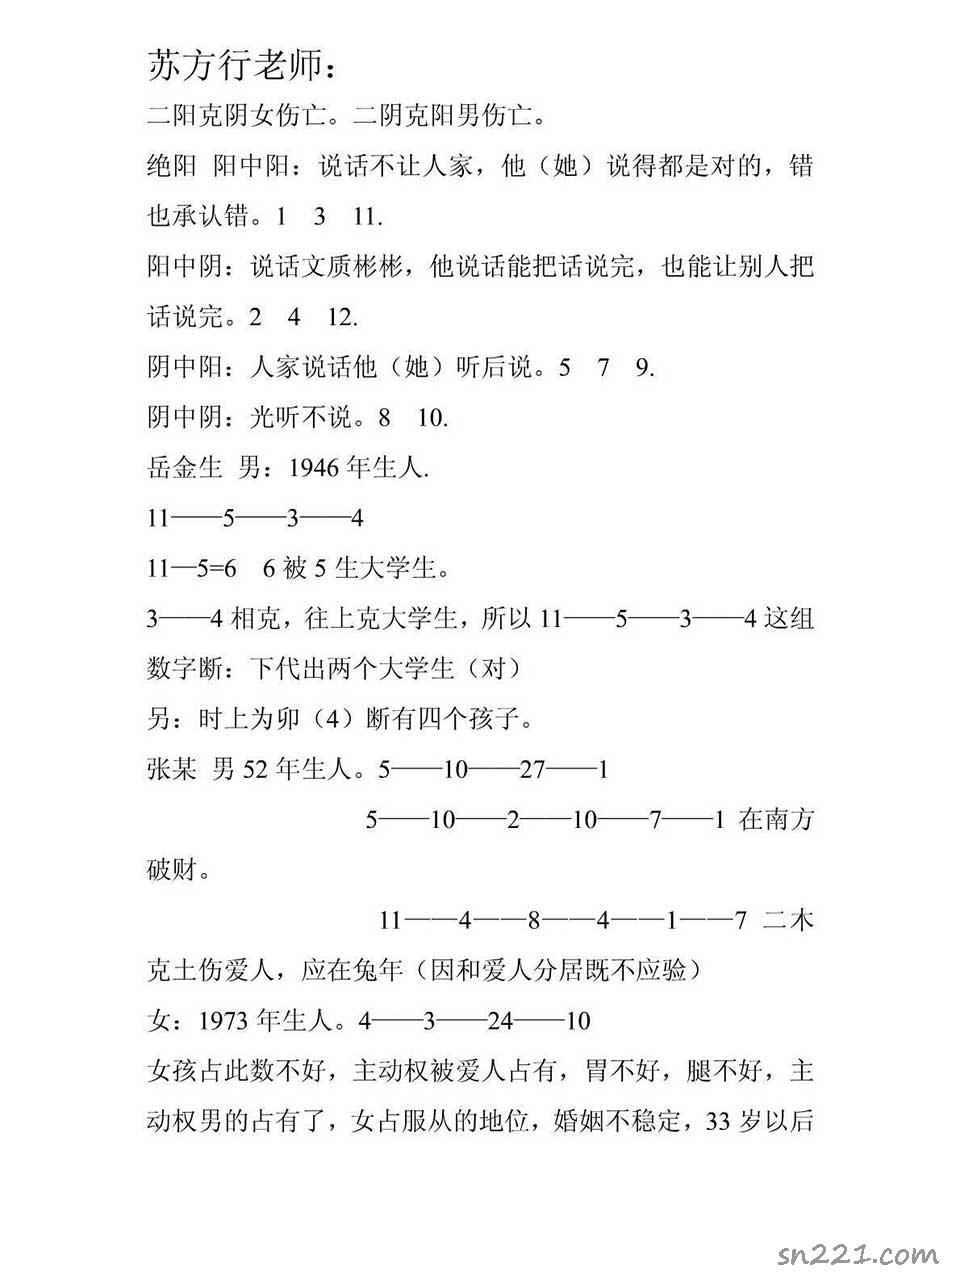 蘇方行-萬事三角定律絕密手稿資料整理版51頁.pdf